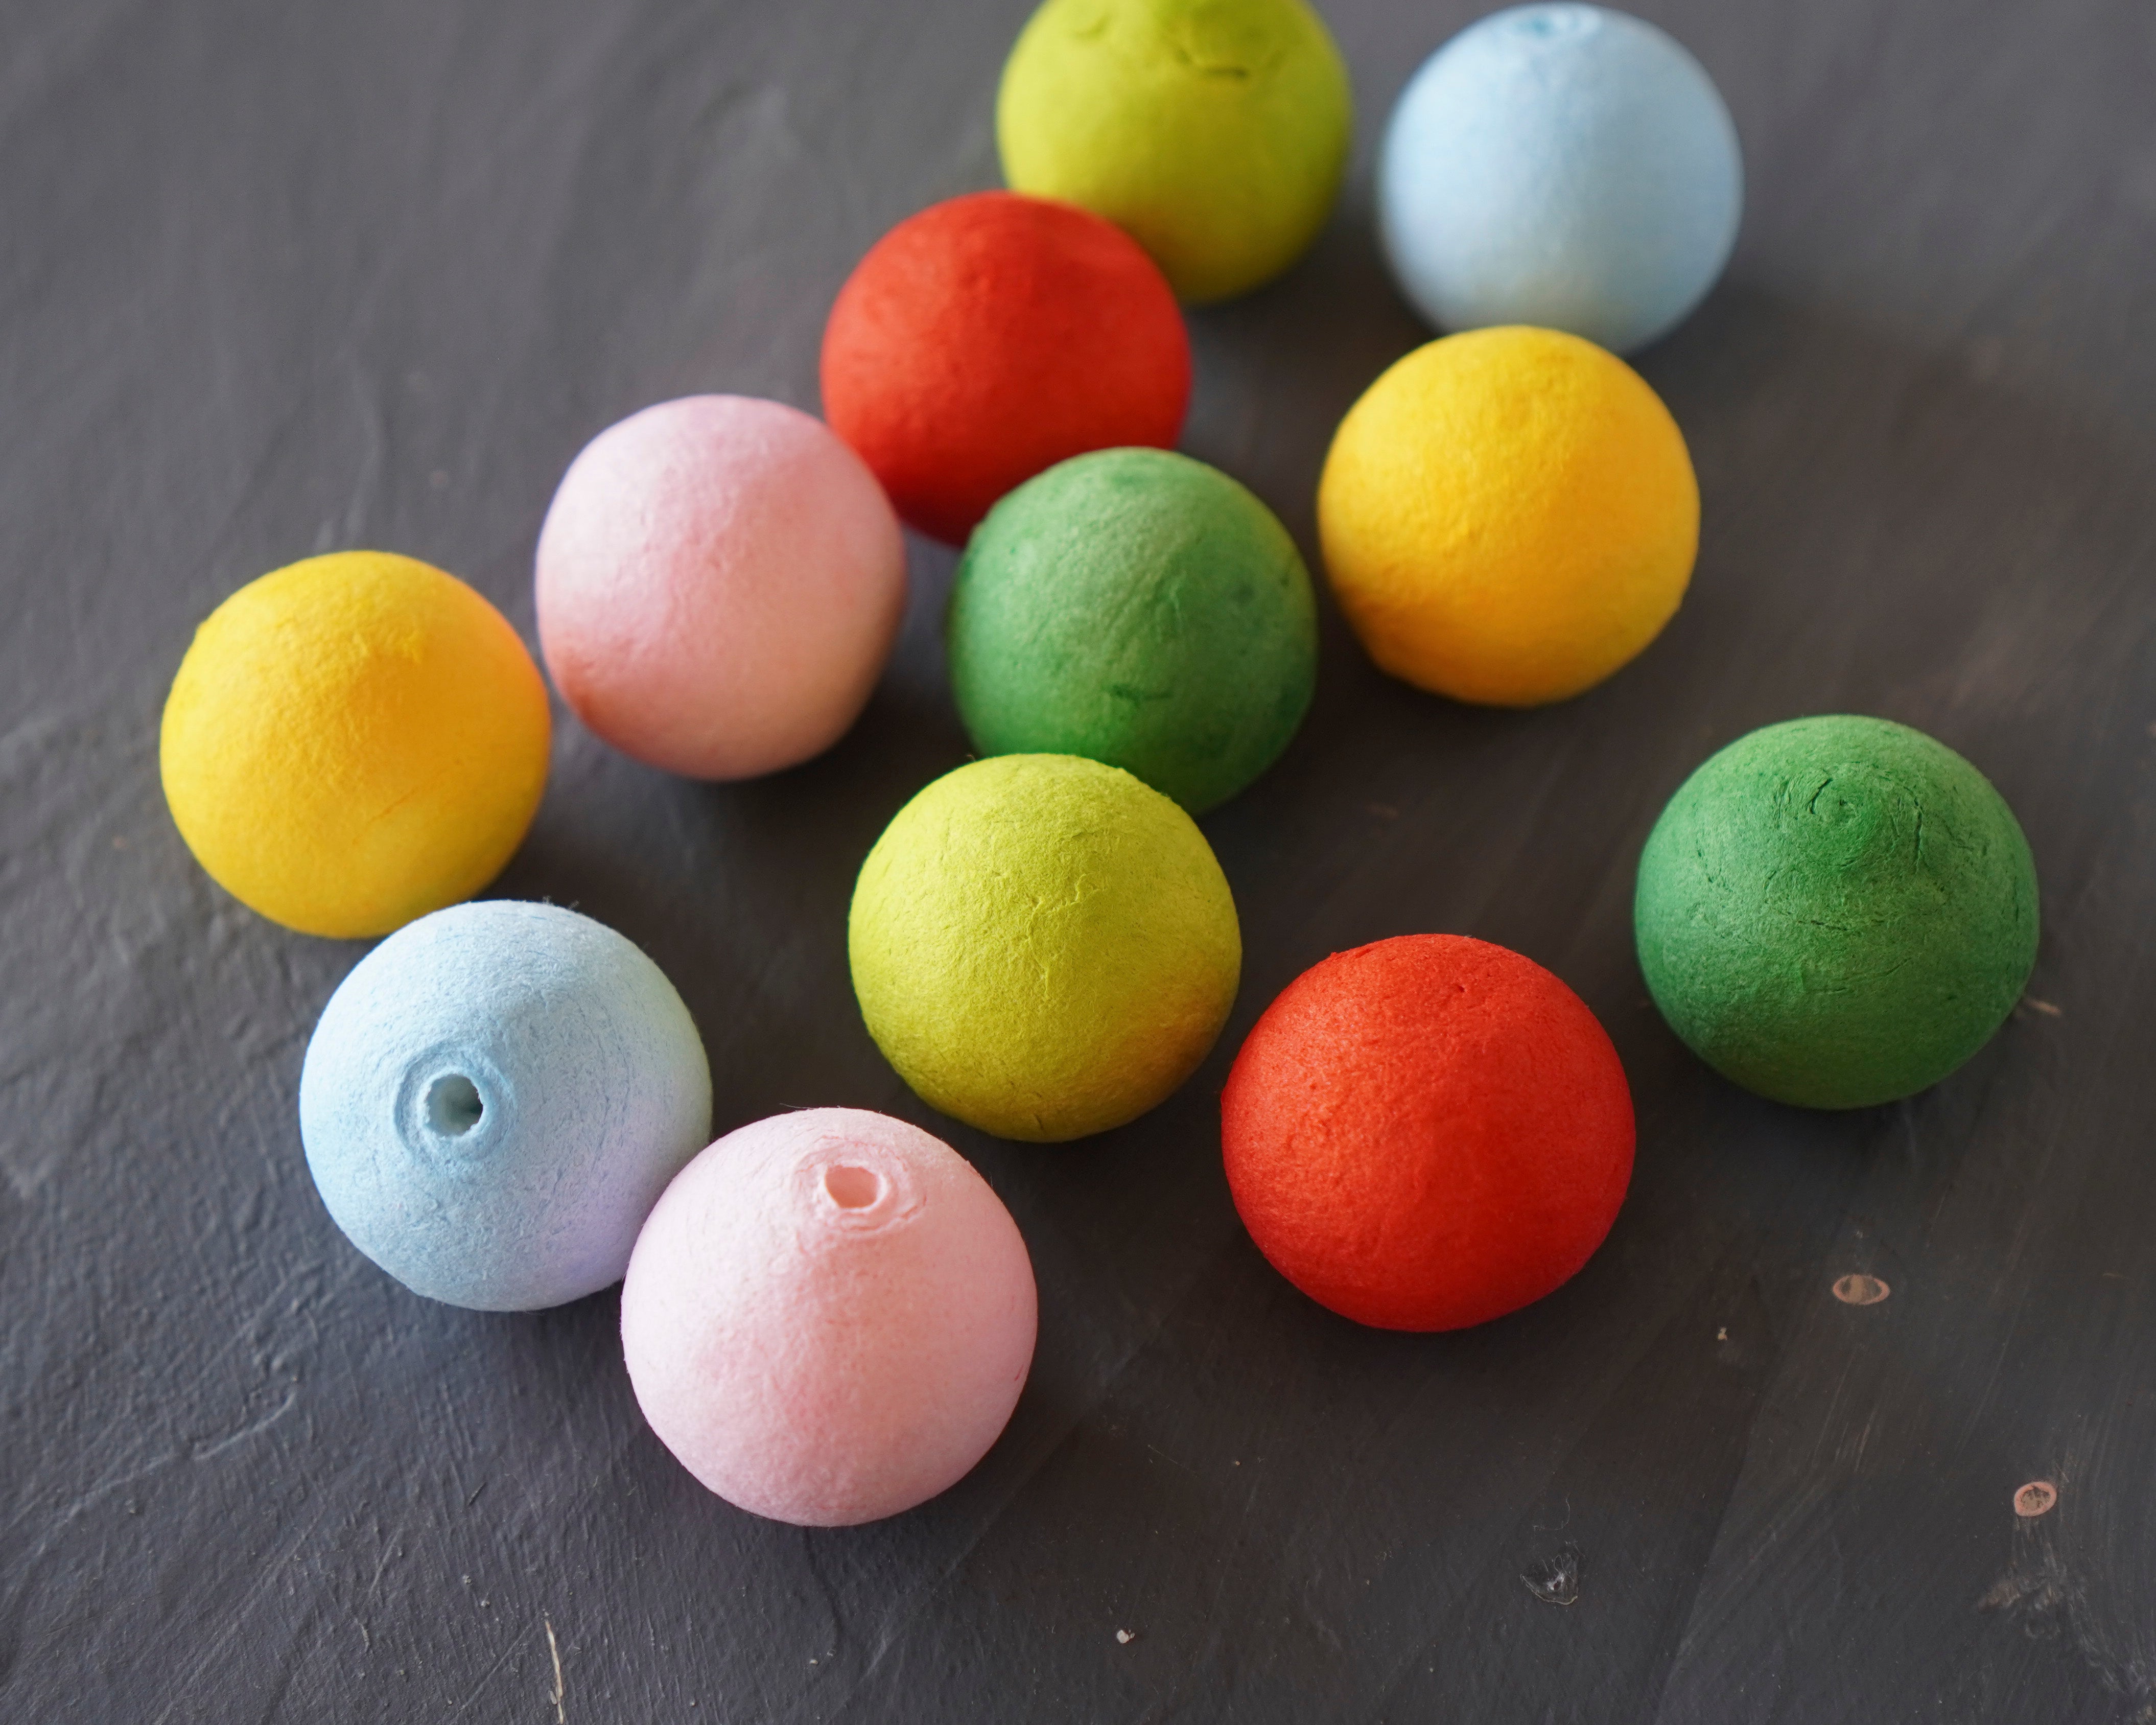 Elf Bodies - Multi Color Tinted 25mm Spun Cotton Balls, 12 Pcs.